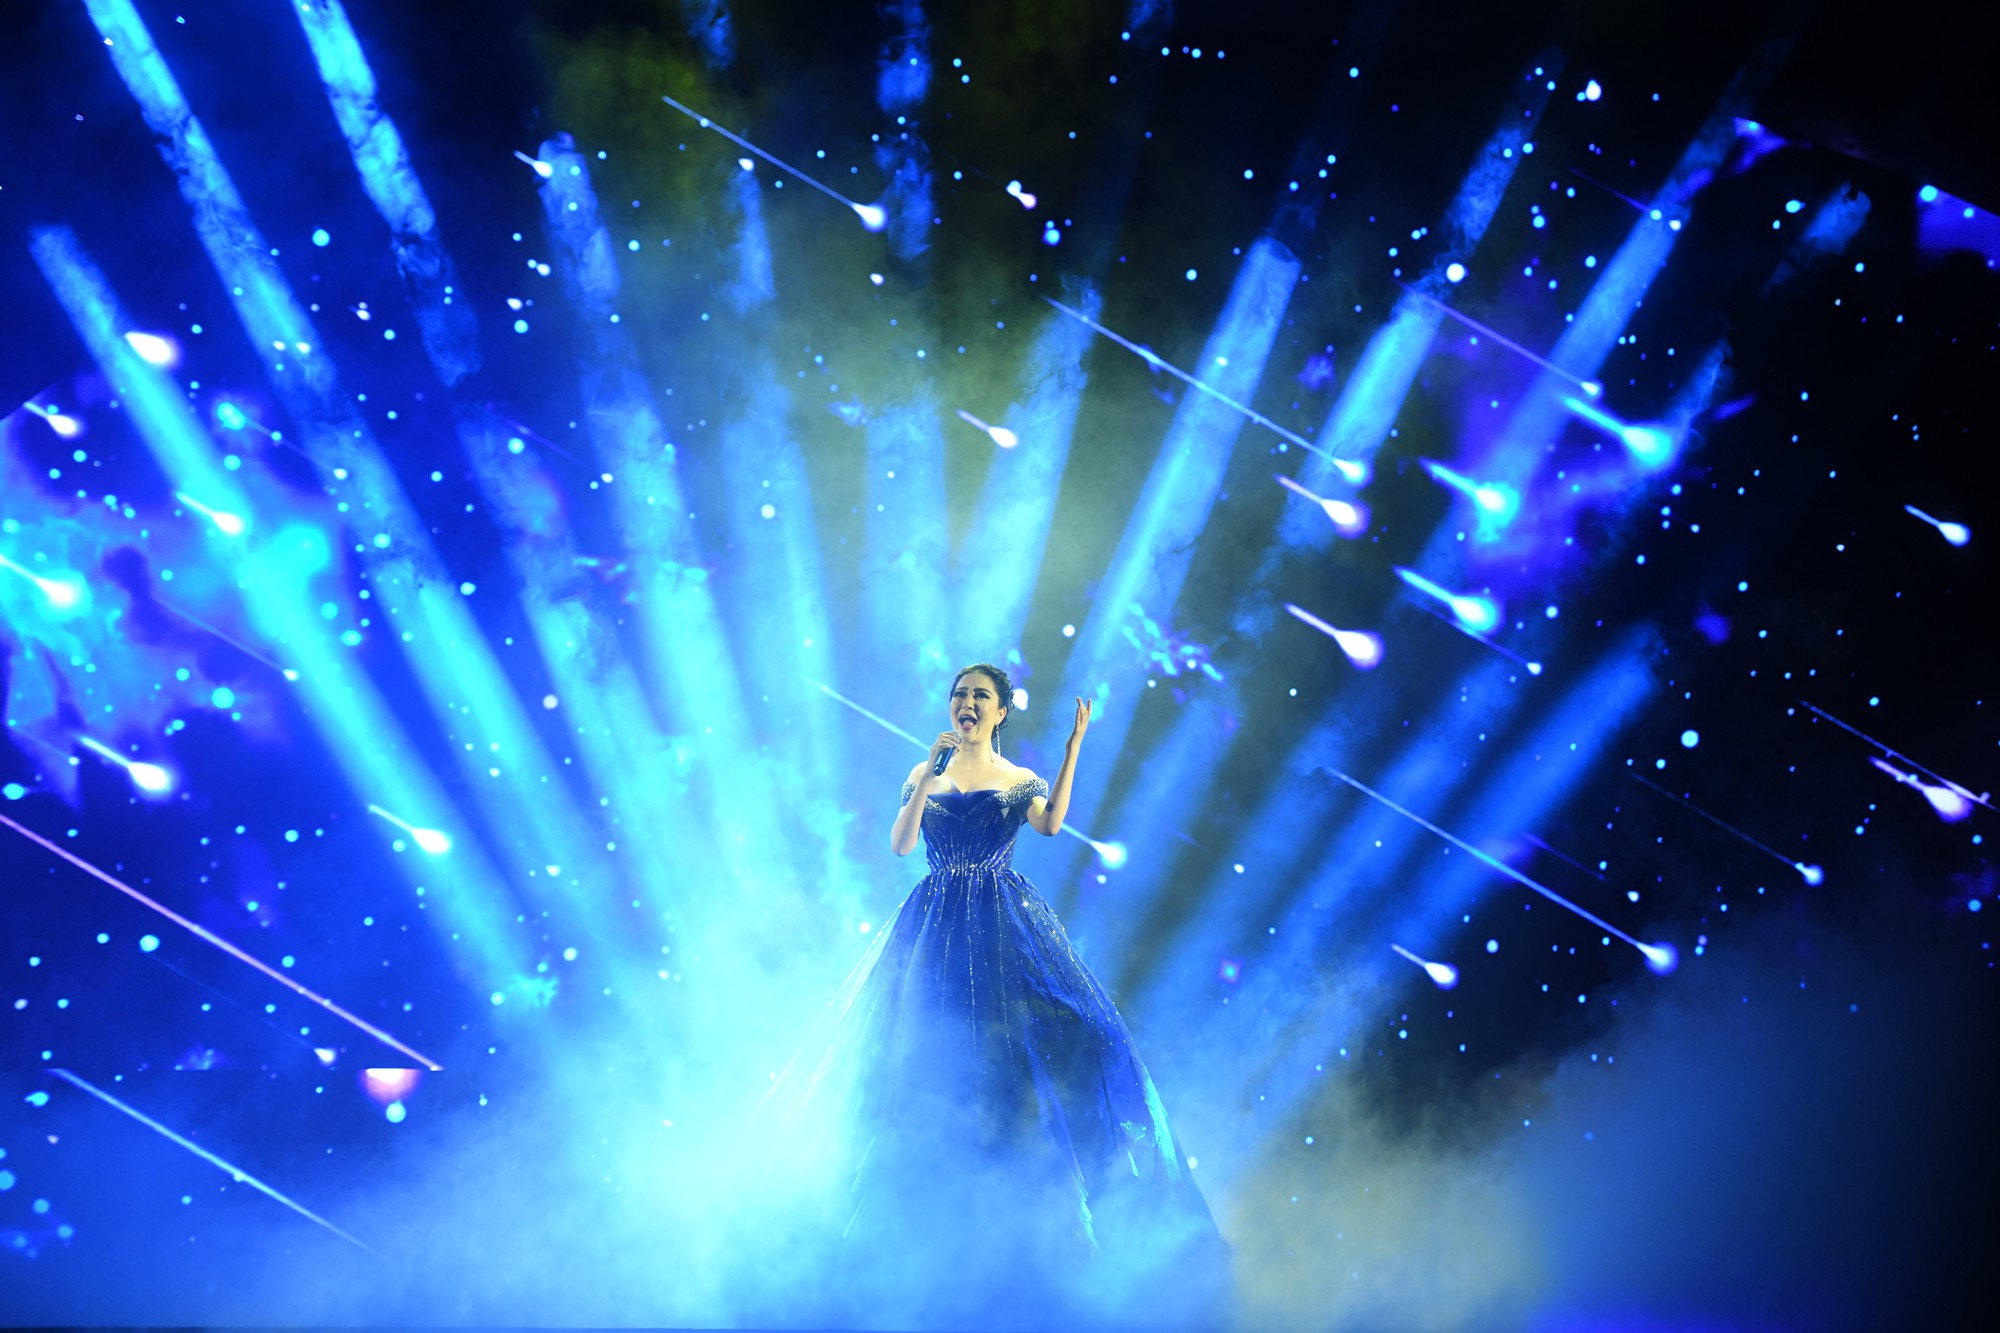 Trở lại 14 năm sau đăng quang, Hoa hậu Nguyễn Thị Huyền hát tiếng Anh cực chuẩn trên sân khấu Hoa Hậu Việt Nam - Ảnh 1.